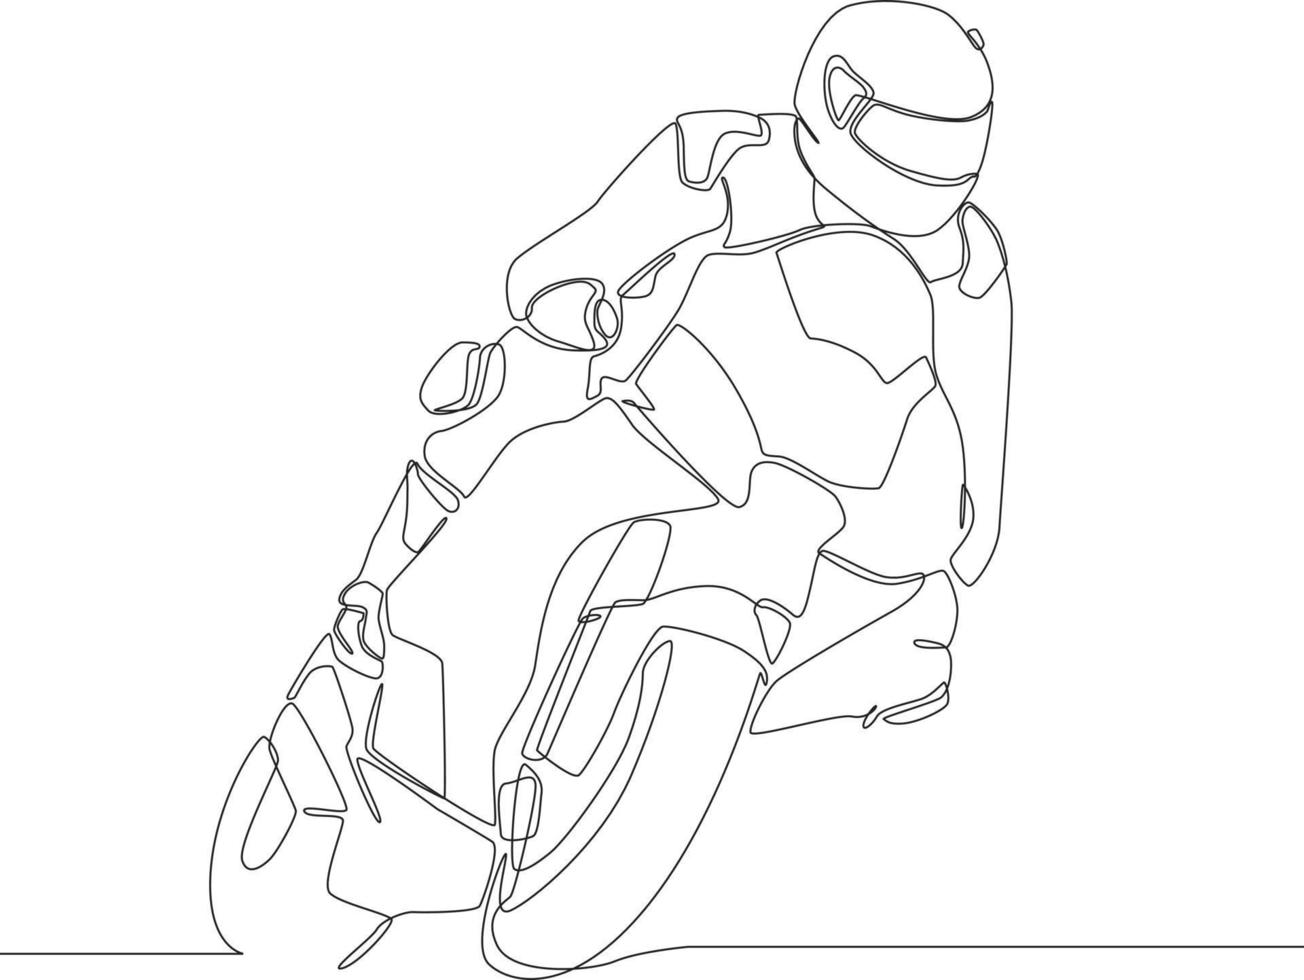 único motociclista de desenho de linha usando capacete, andando de